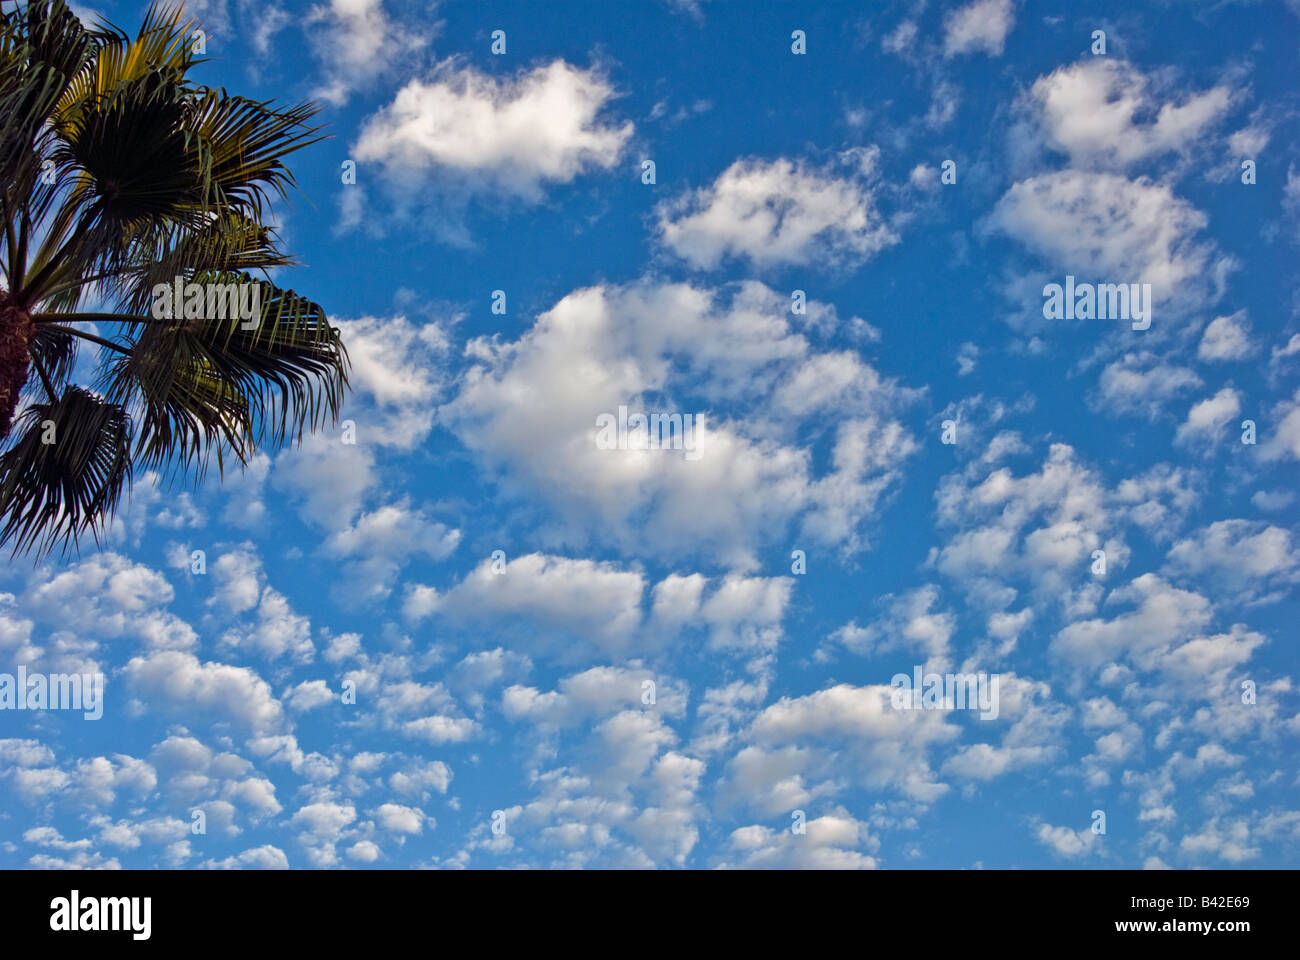 Développement de cumulus, palmiers, ciel bleu, Personne, personne n'Howard Hughes Center Los Angeles California, USA Banque D'Images